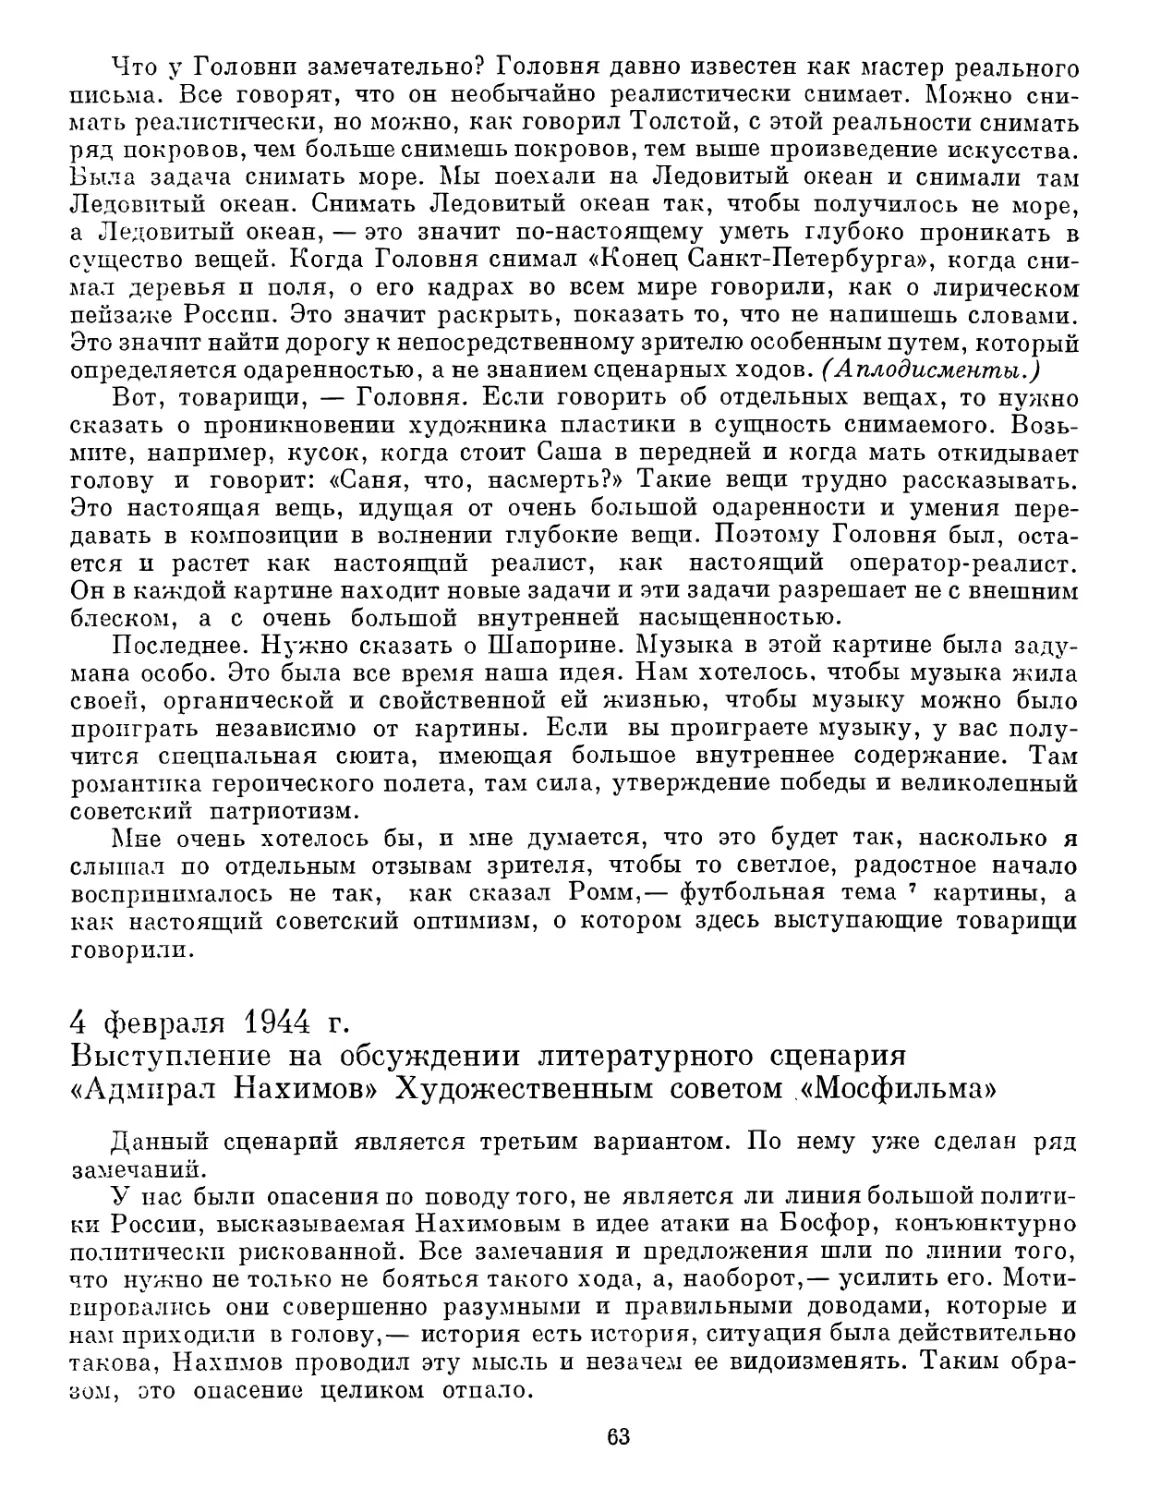 4 февраля 1944 г. Выступление на обсуждении литературного сценария «Адмирал Нахимов» Художественным советом «Мосфильма»